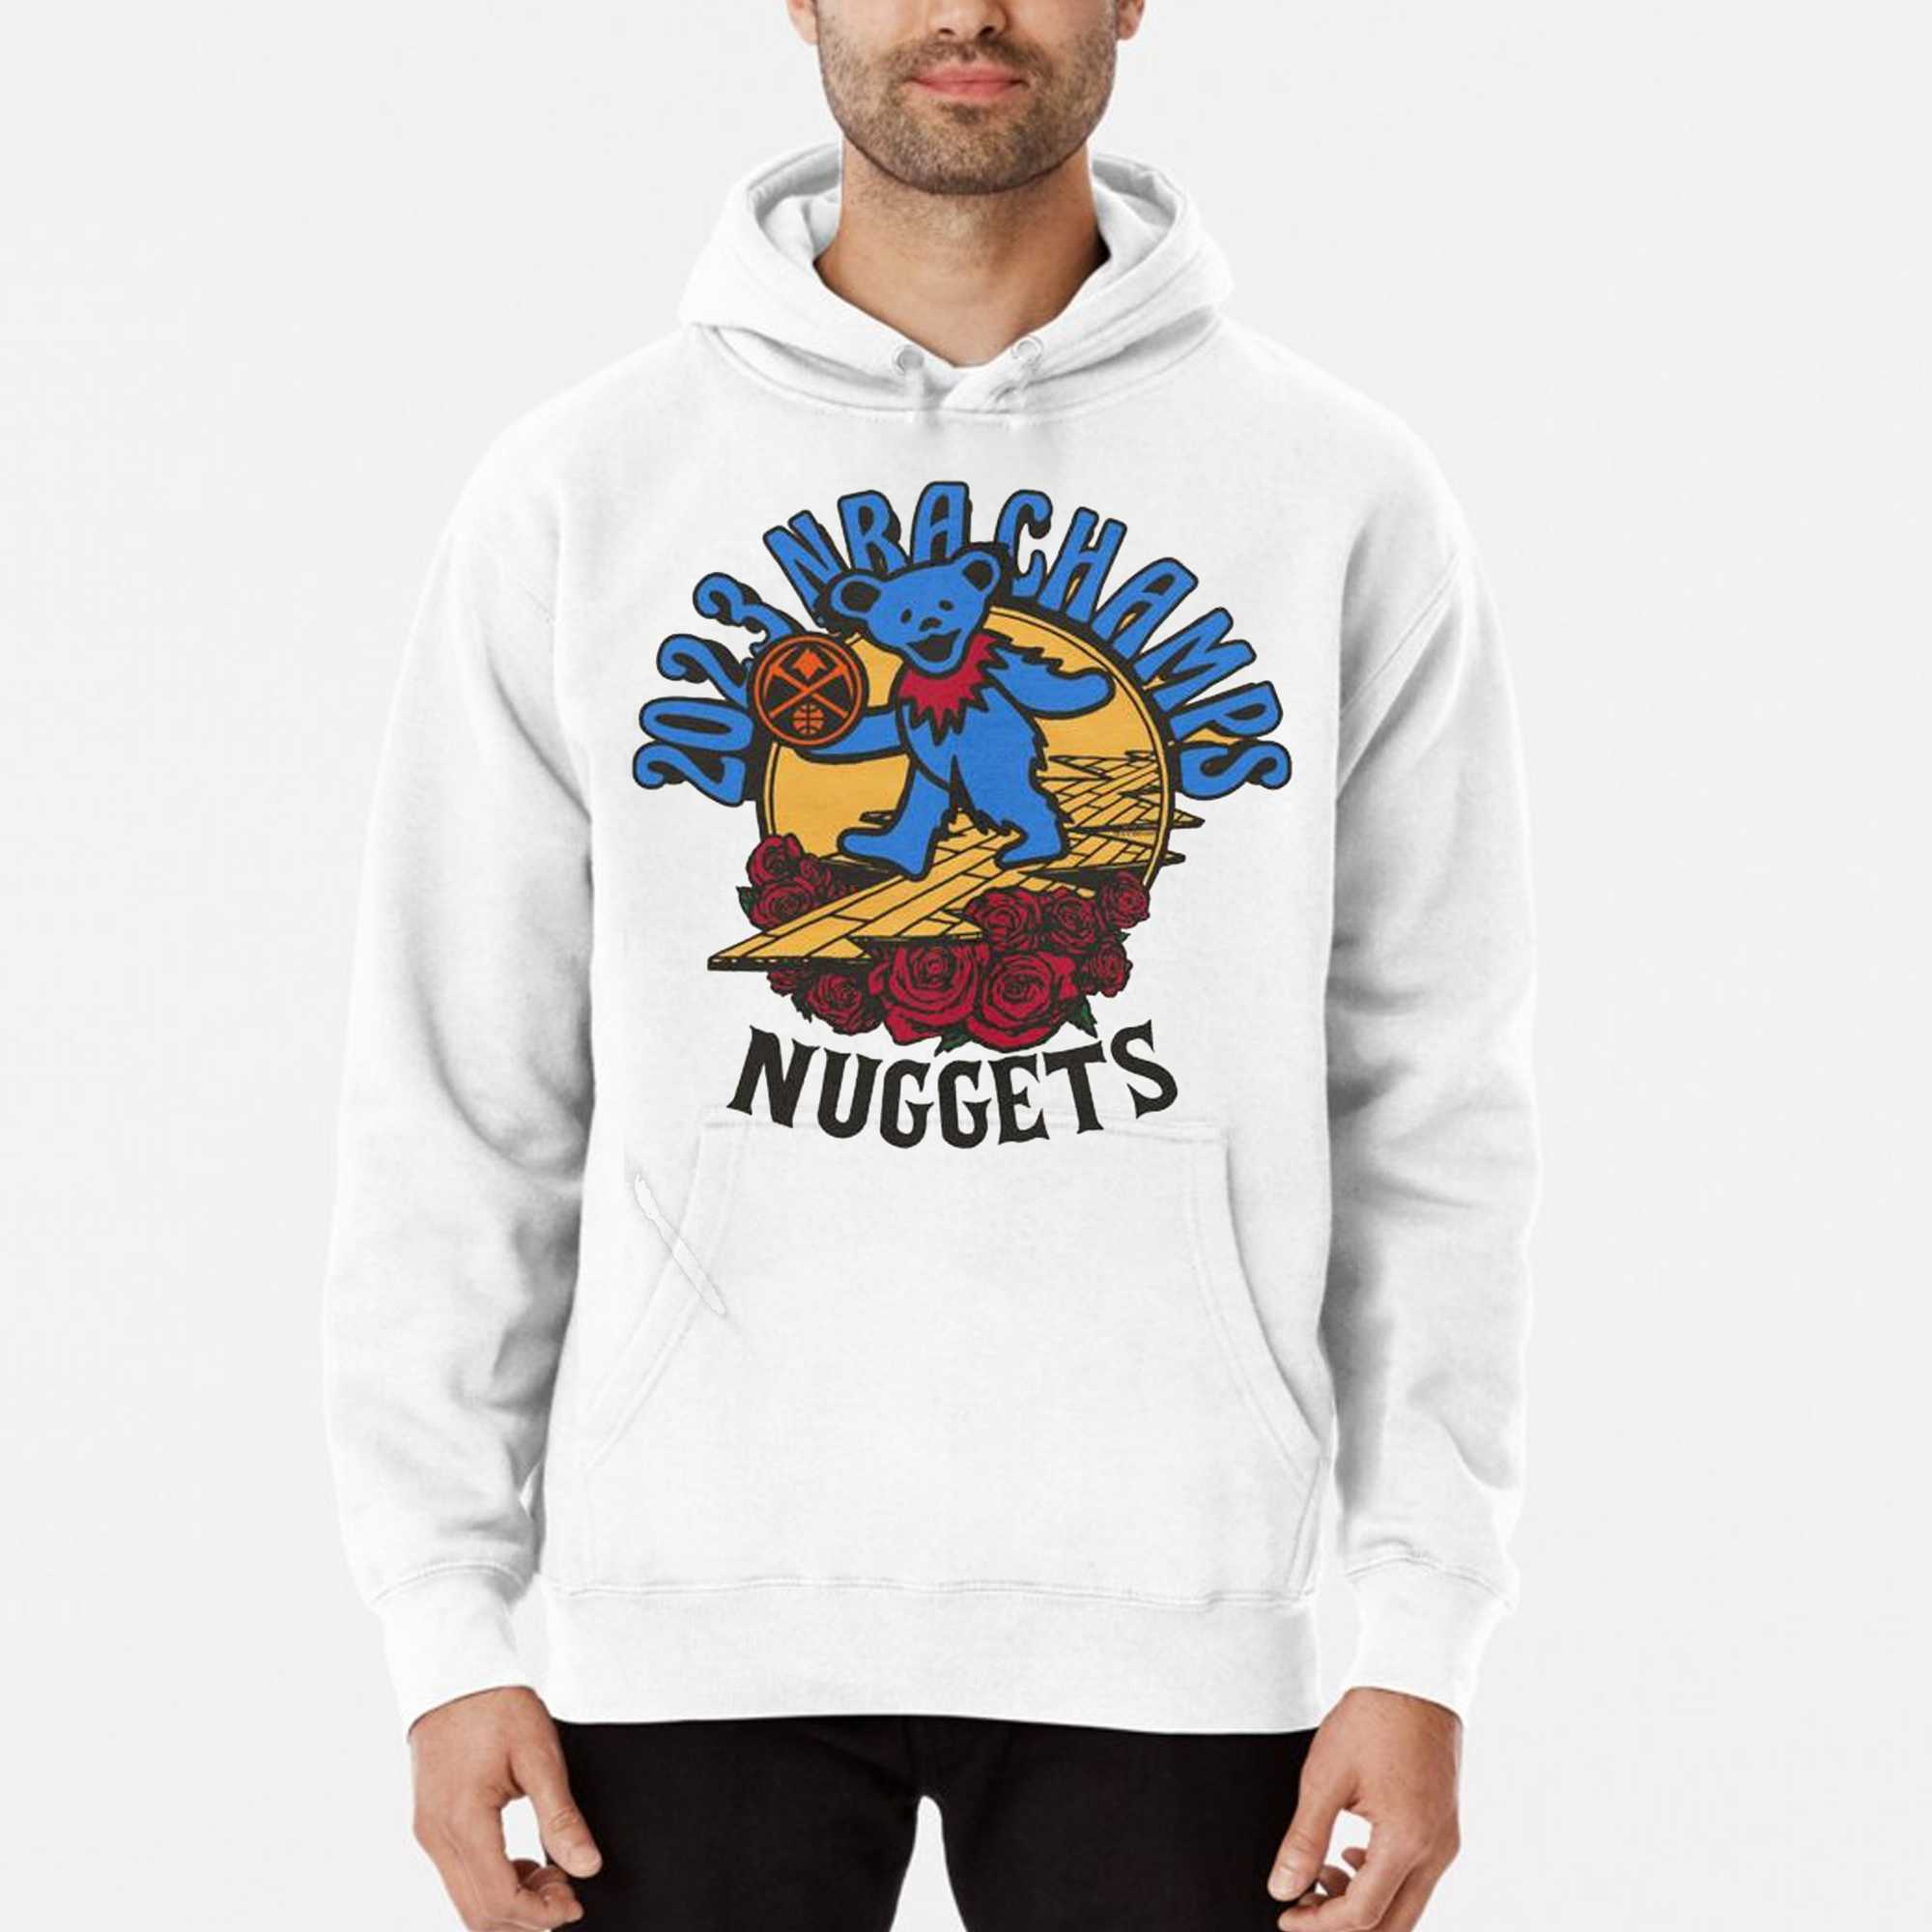 Denver Nuggets Hoodie Men Medium Blue Team Sweatshirt Sweater